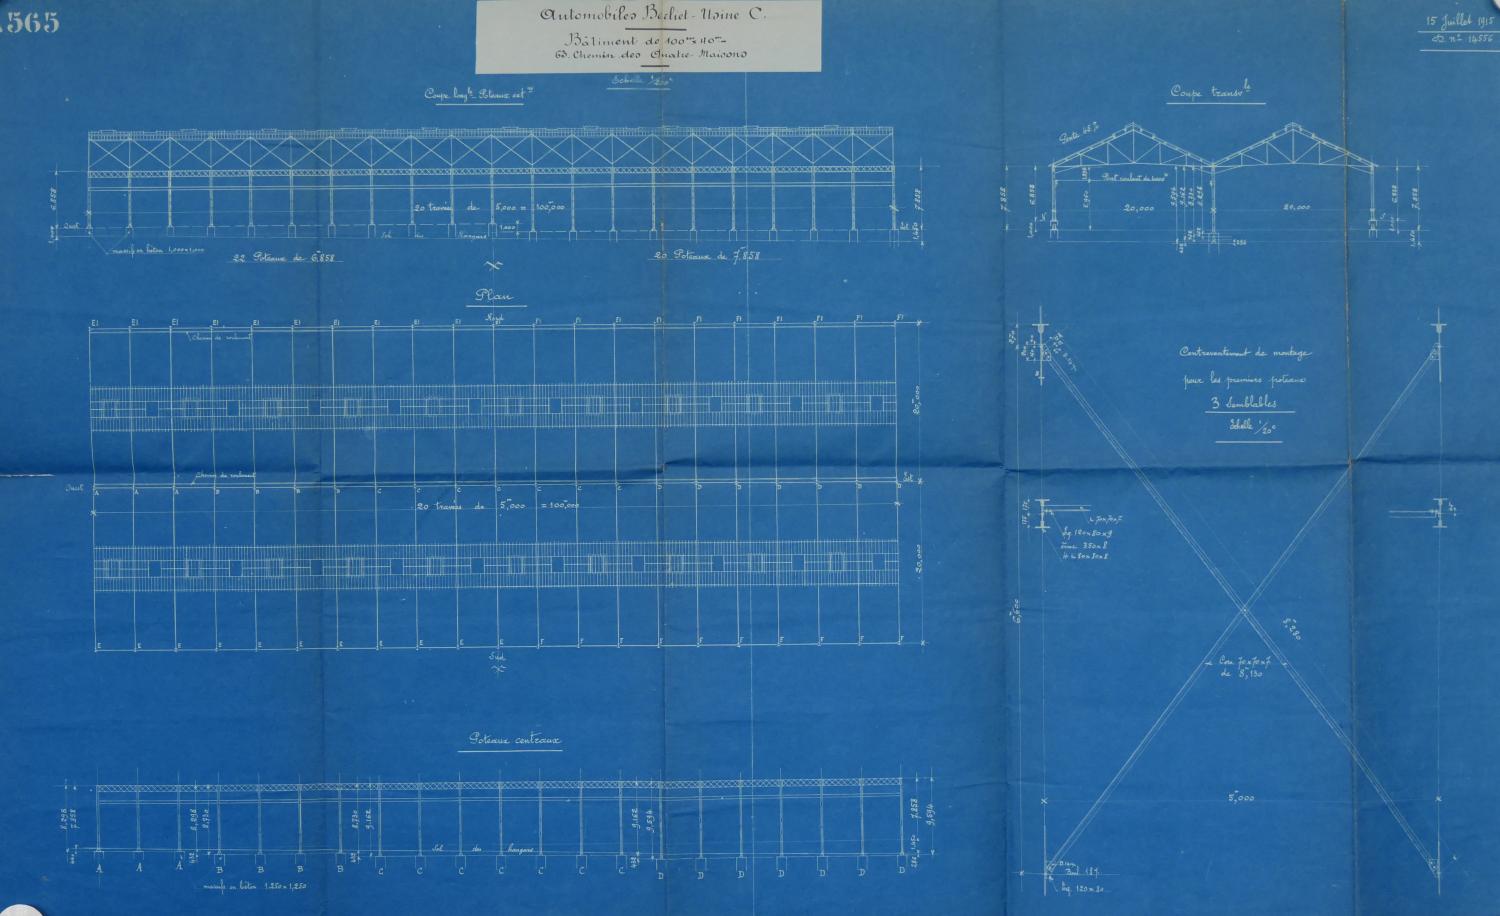 Plan usine : usine C Berliet rue des quatre maisons 1915 (ACL : 314563-106)